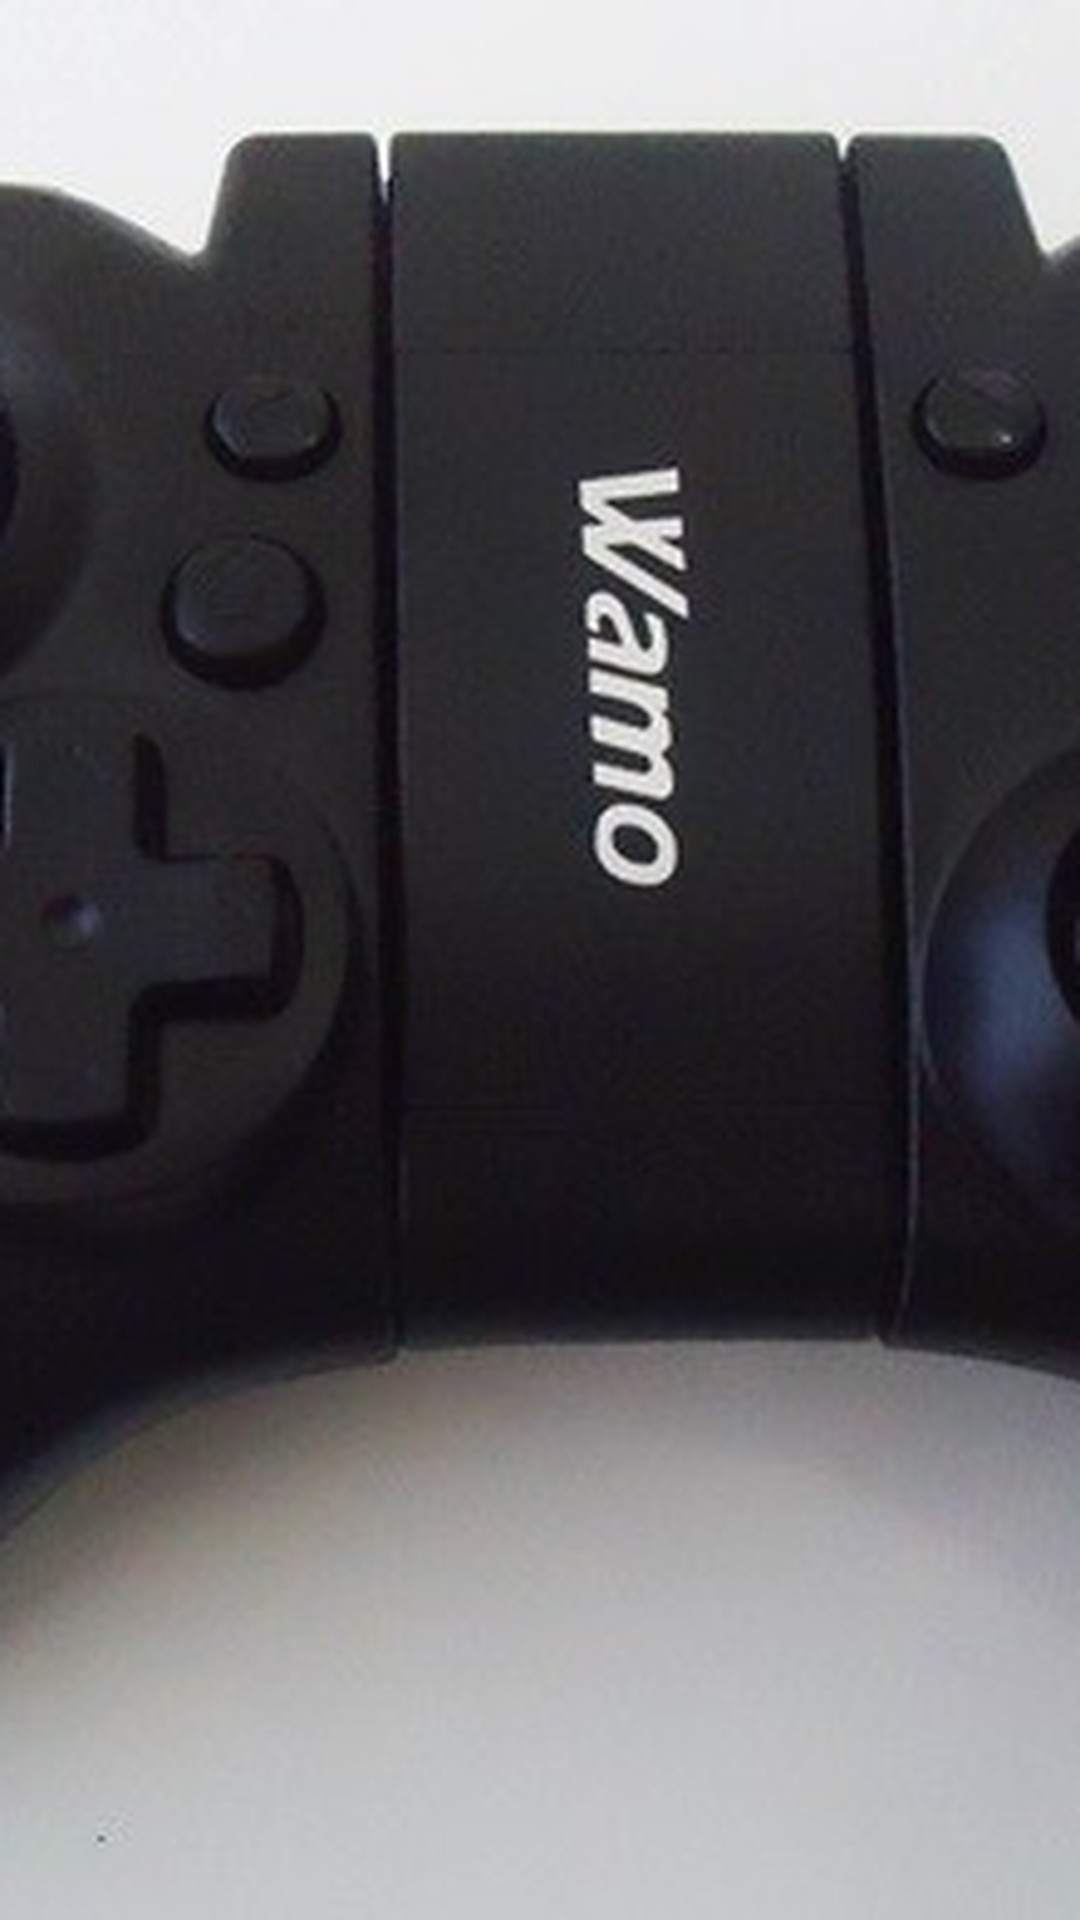 Wamo Pro: como configurar o joystick para jogar no seu smartphone